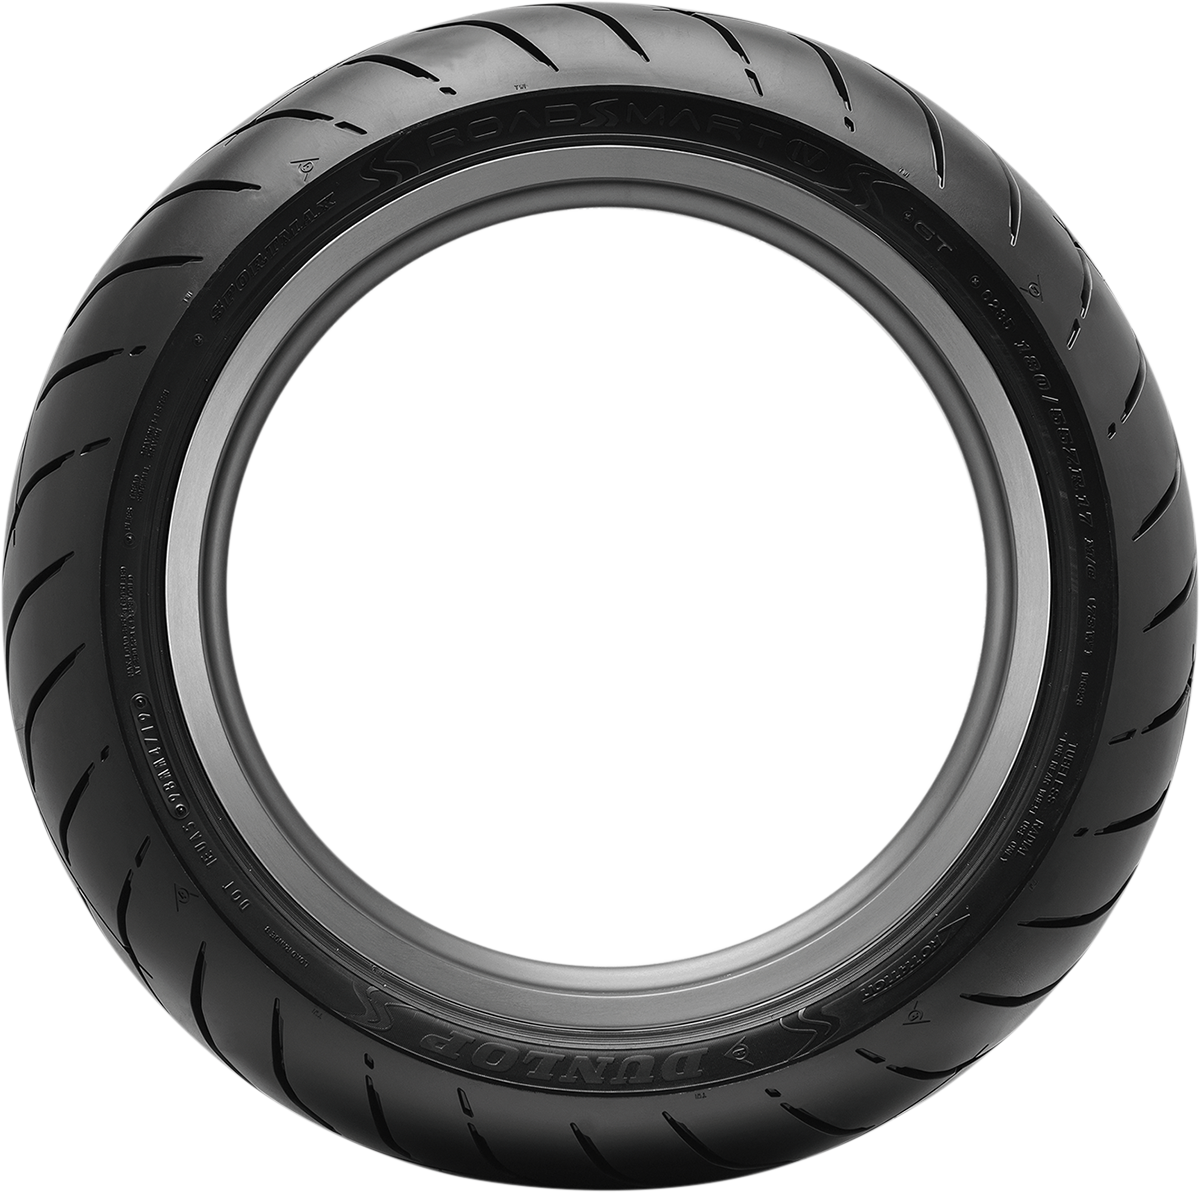 DUNLOP Tire - Sportmax® Roadsmart IV - Rear - 160/60ZR17 - (69W) 45253302